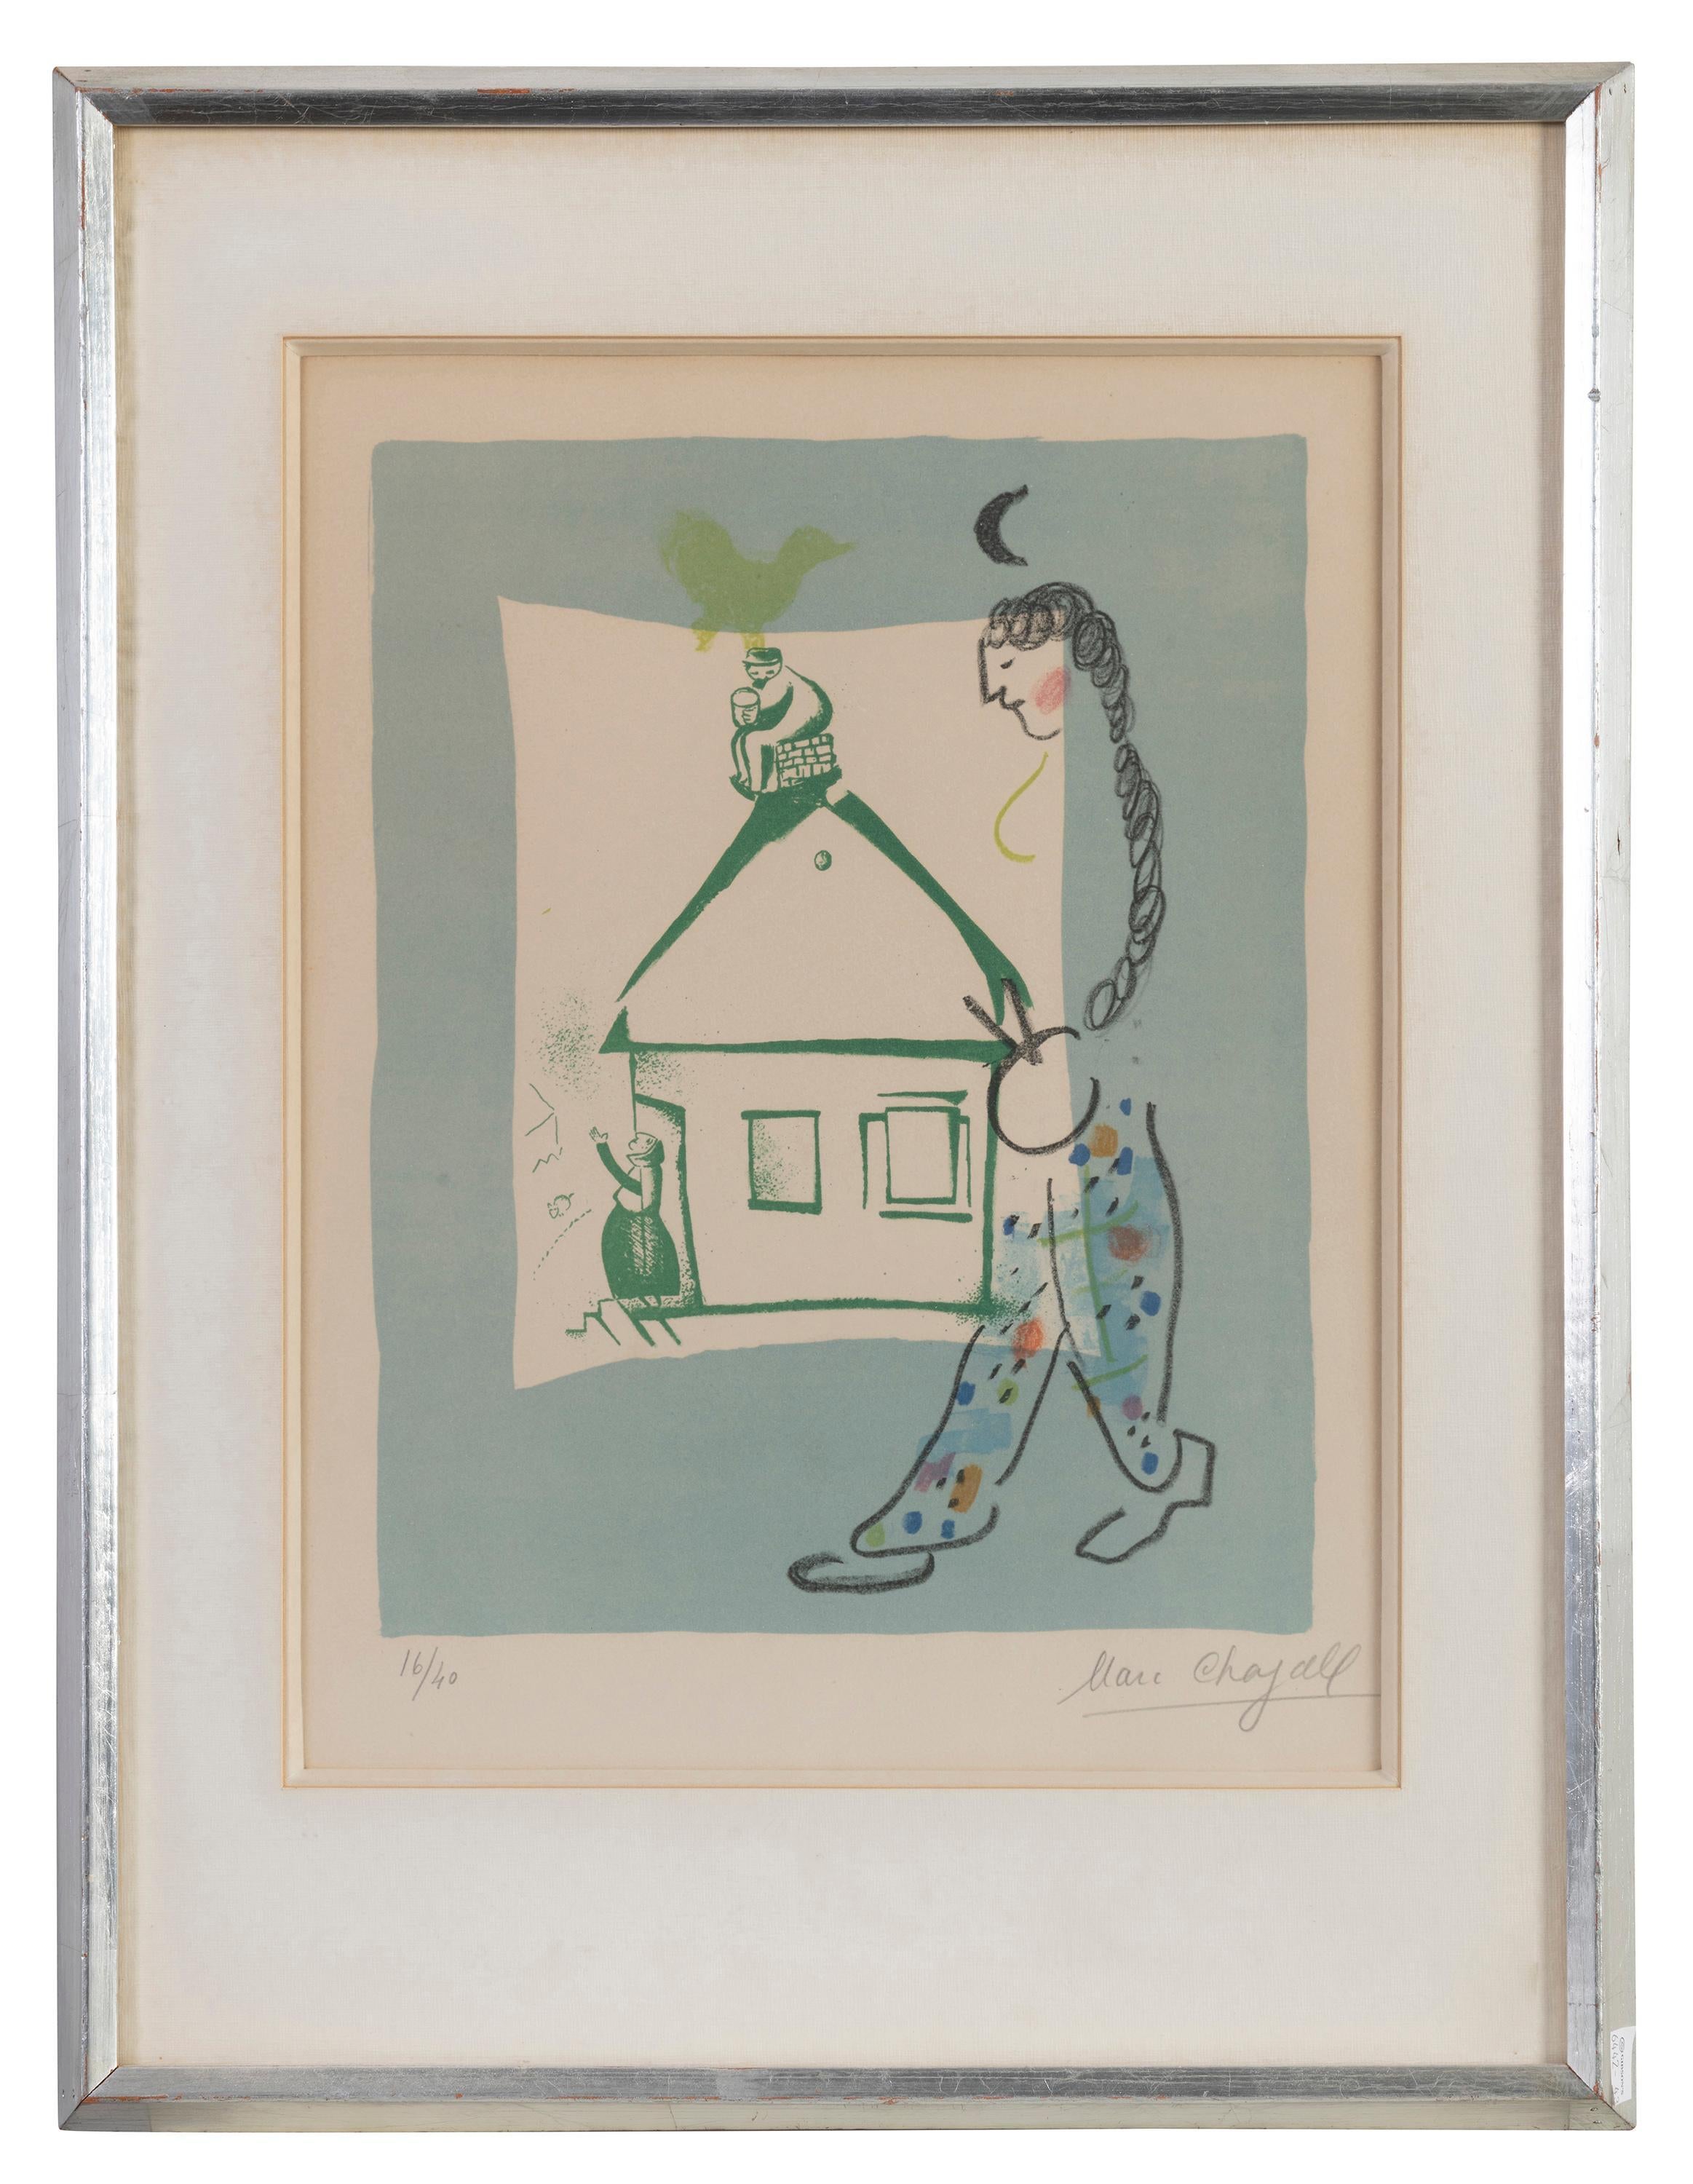 Marc Chagall 
Das Haus in meinem Dorf, 1960
Lithographie
Handsigniert unten rechts
Auflage 16/40 unten links
Rahmengröße 56 x 42,5 x 3 cm
Bildgröße 32 × 25,5 cm
Inklusive Rahmen

Referenz Mourlot  283

Einige Flecken auf der Matte